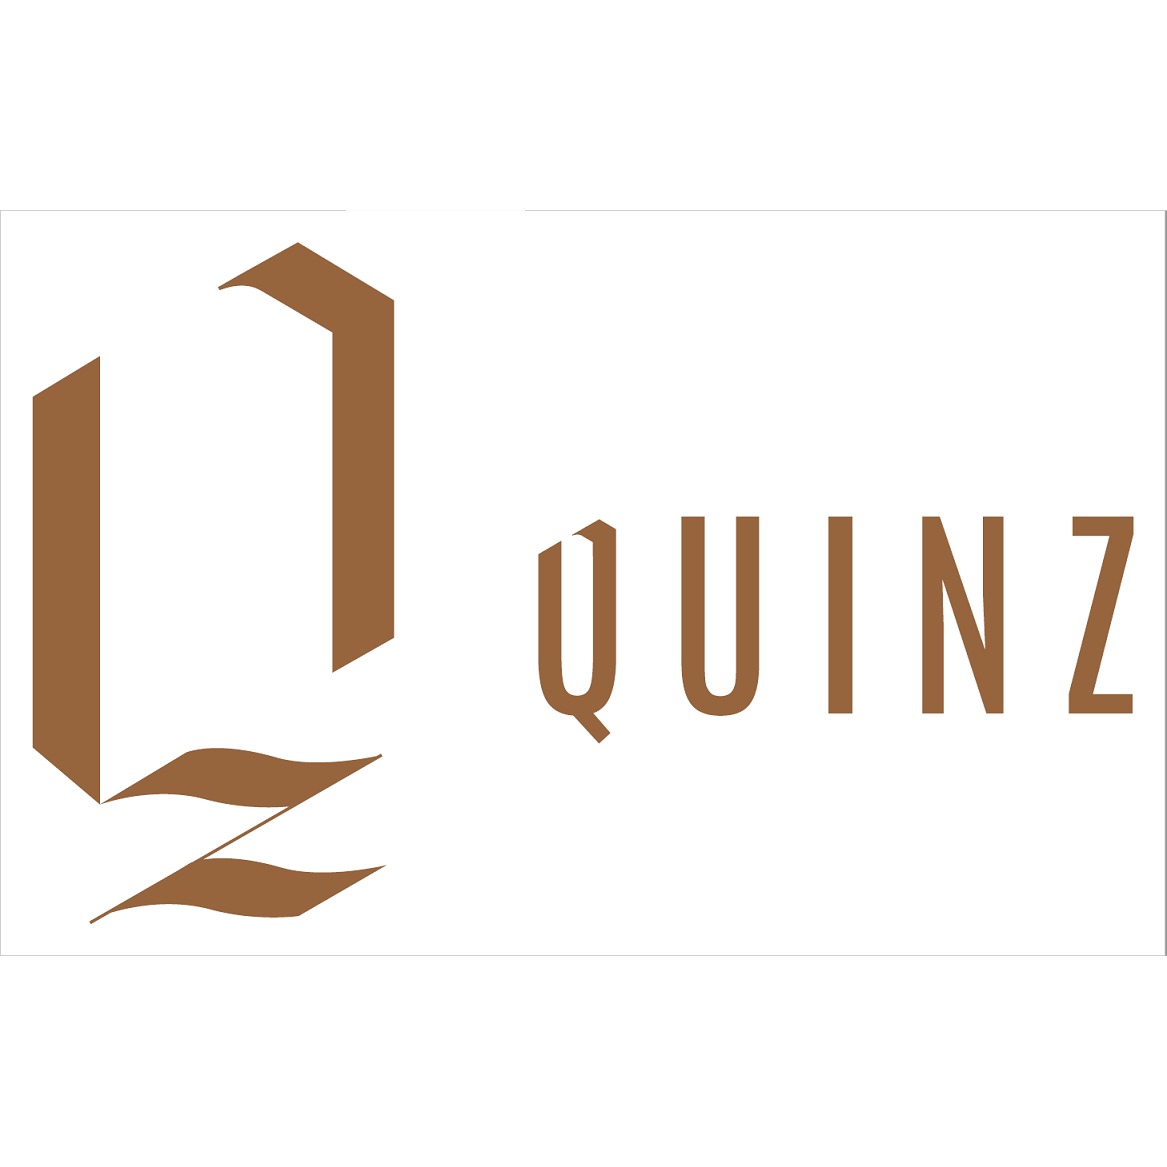 Quinz